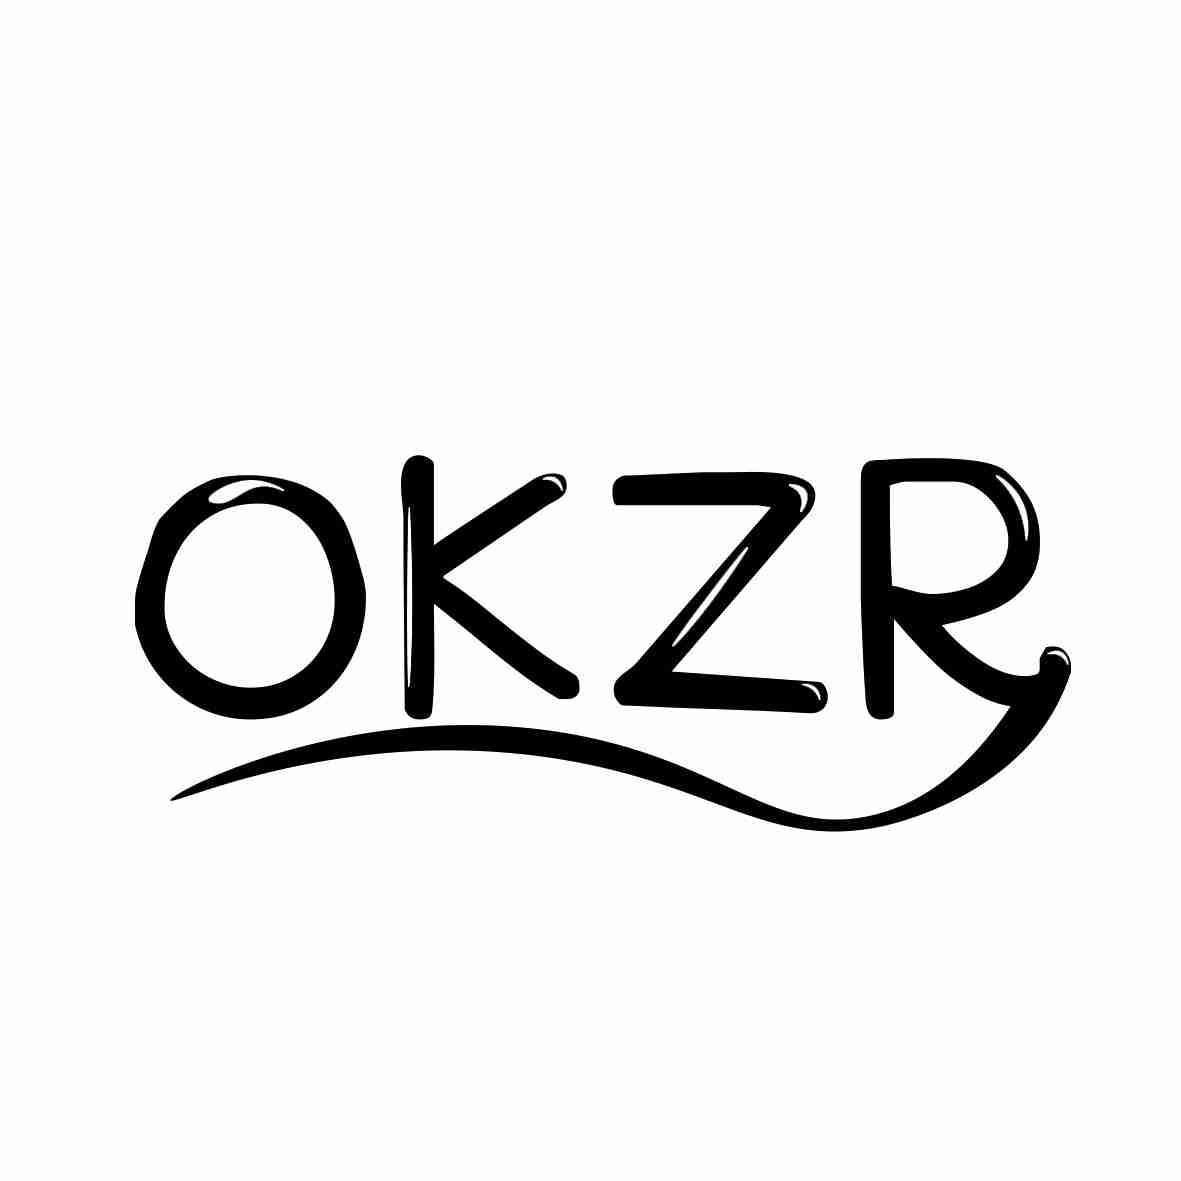 OKZR 商标公告